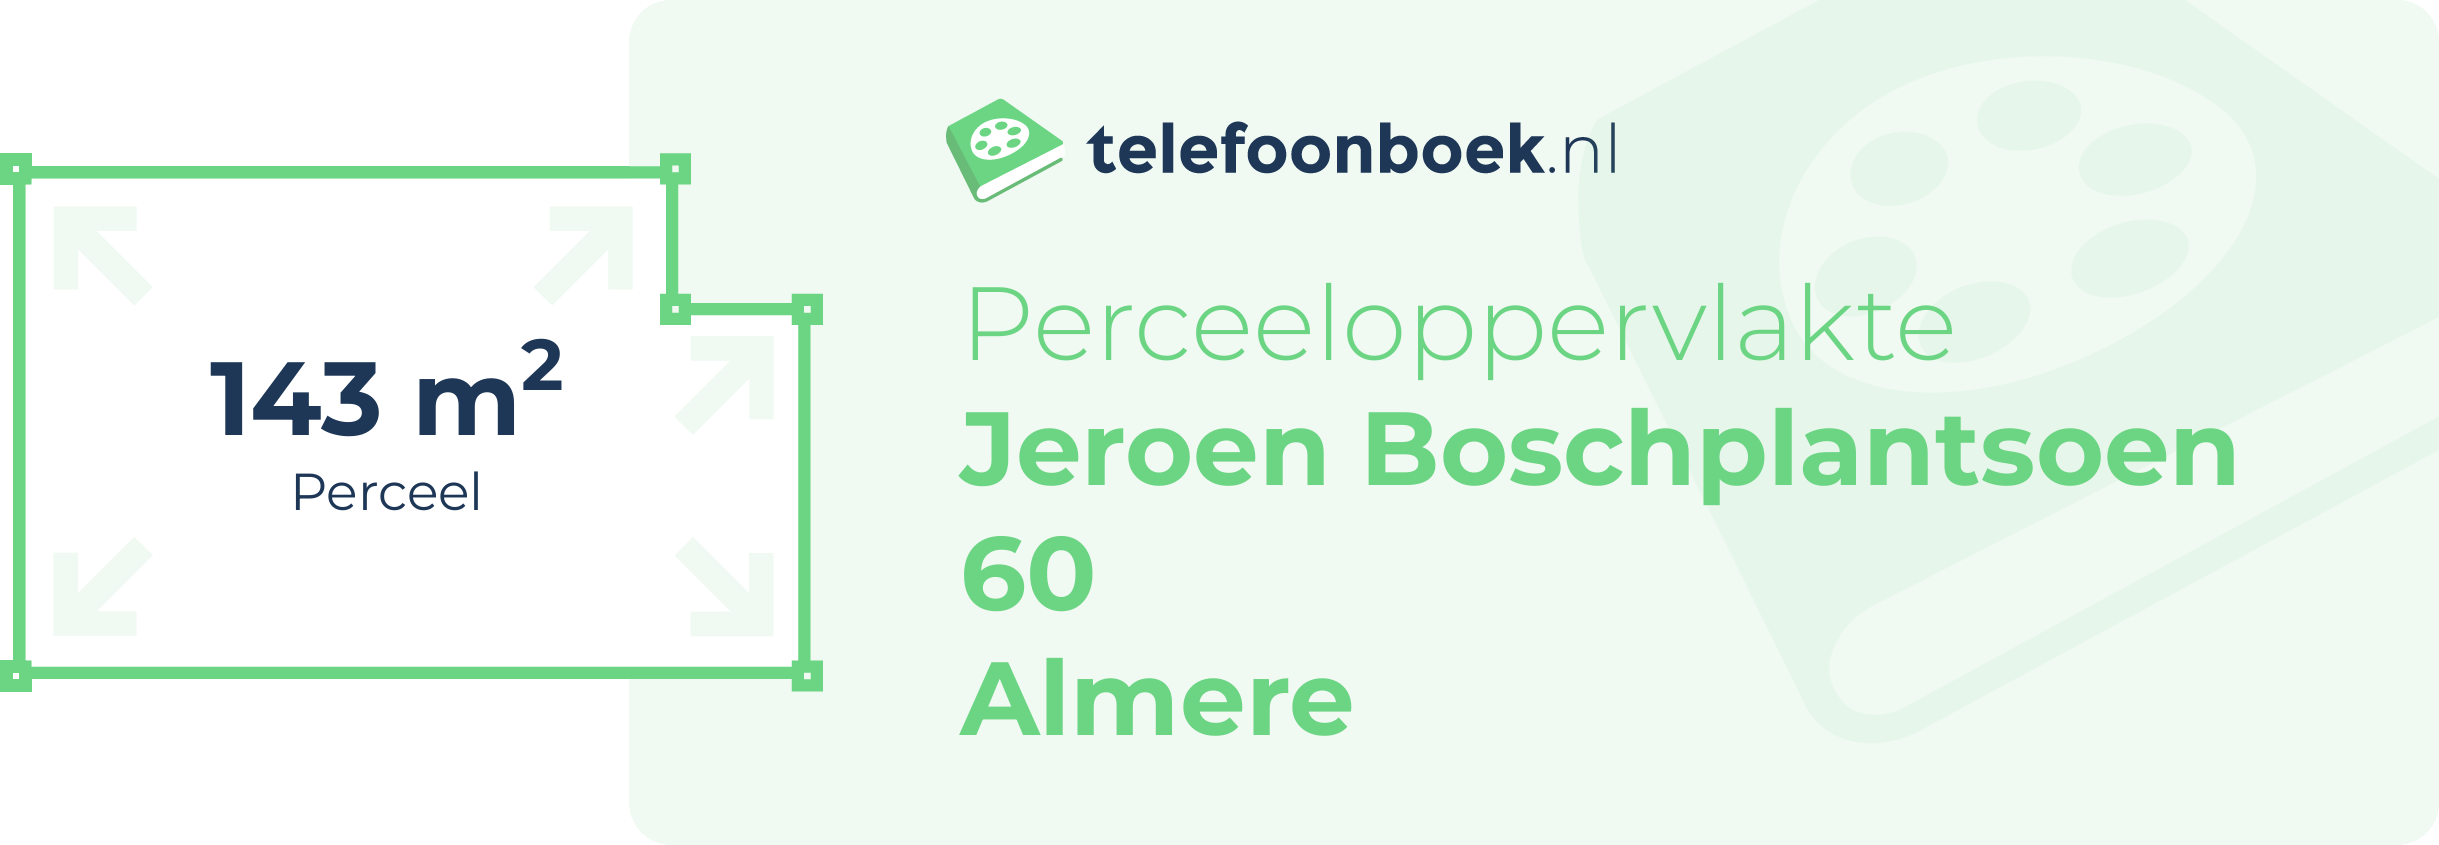 Perceeloppervlakte Jeroen Boschplantsoen 60 Almere